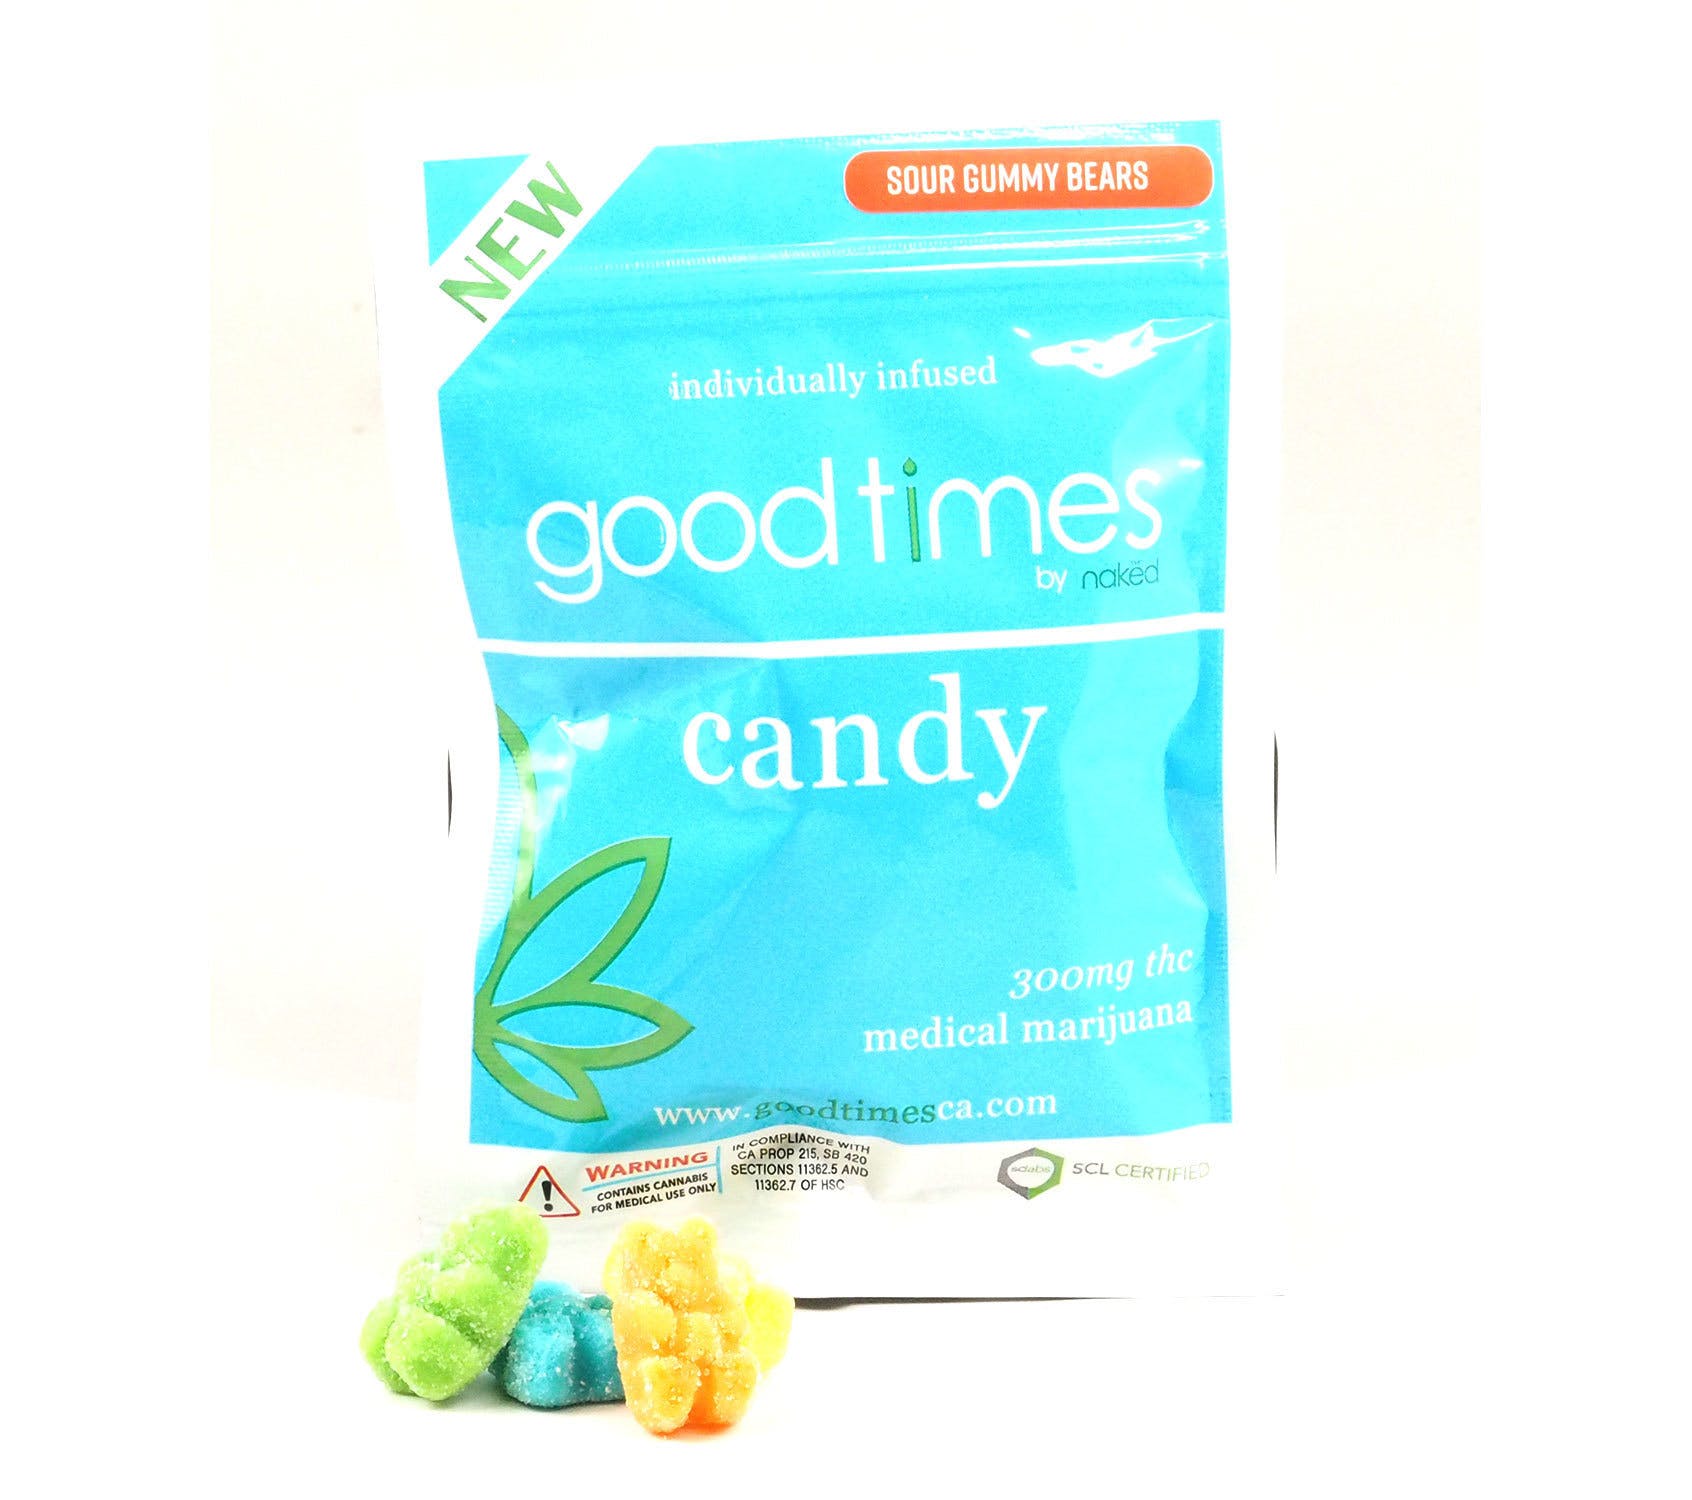 edible-goodtimes-300mg-candy